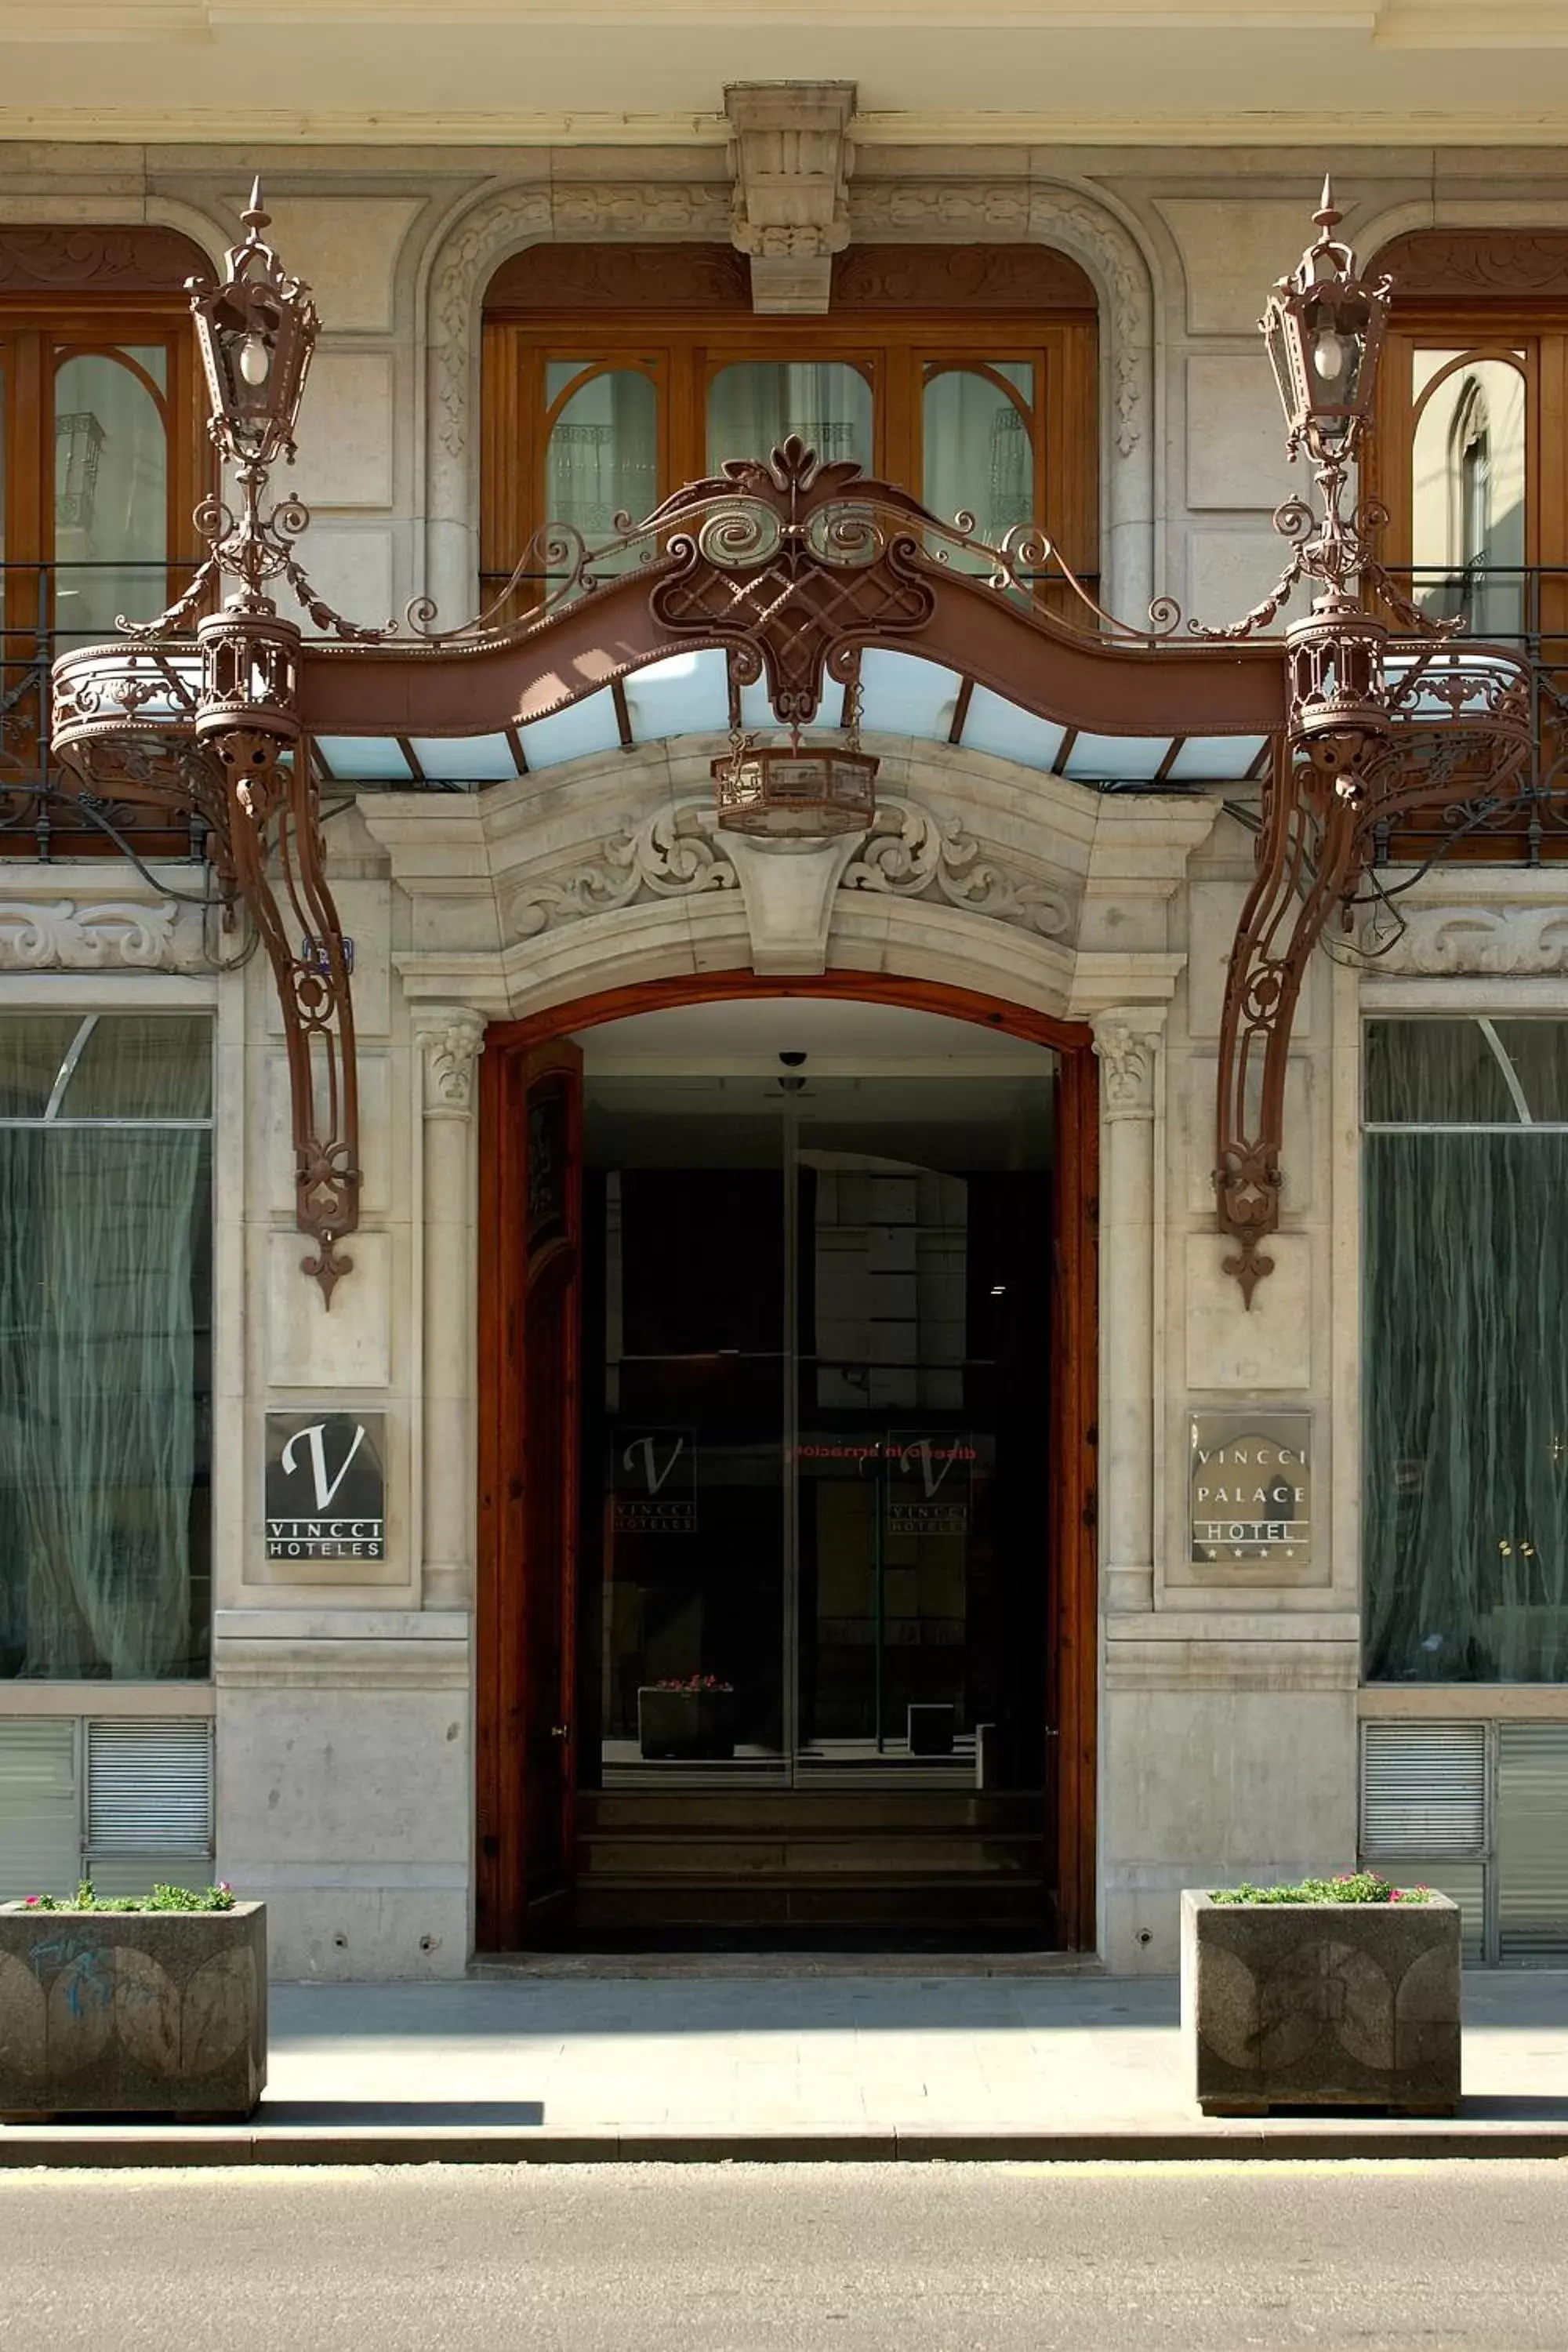 Facade/entrance in Vincci Palace